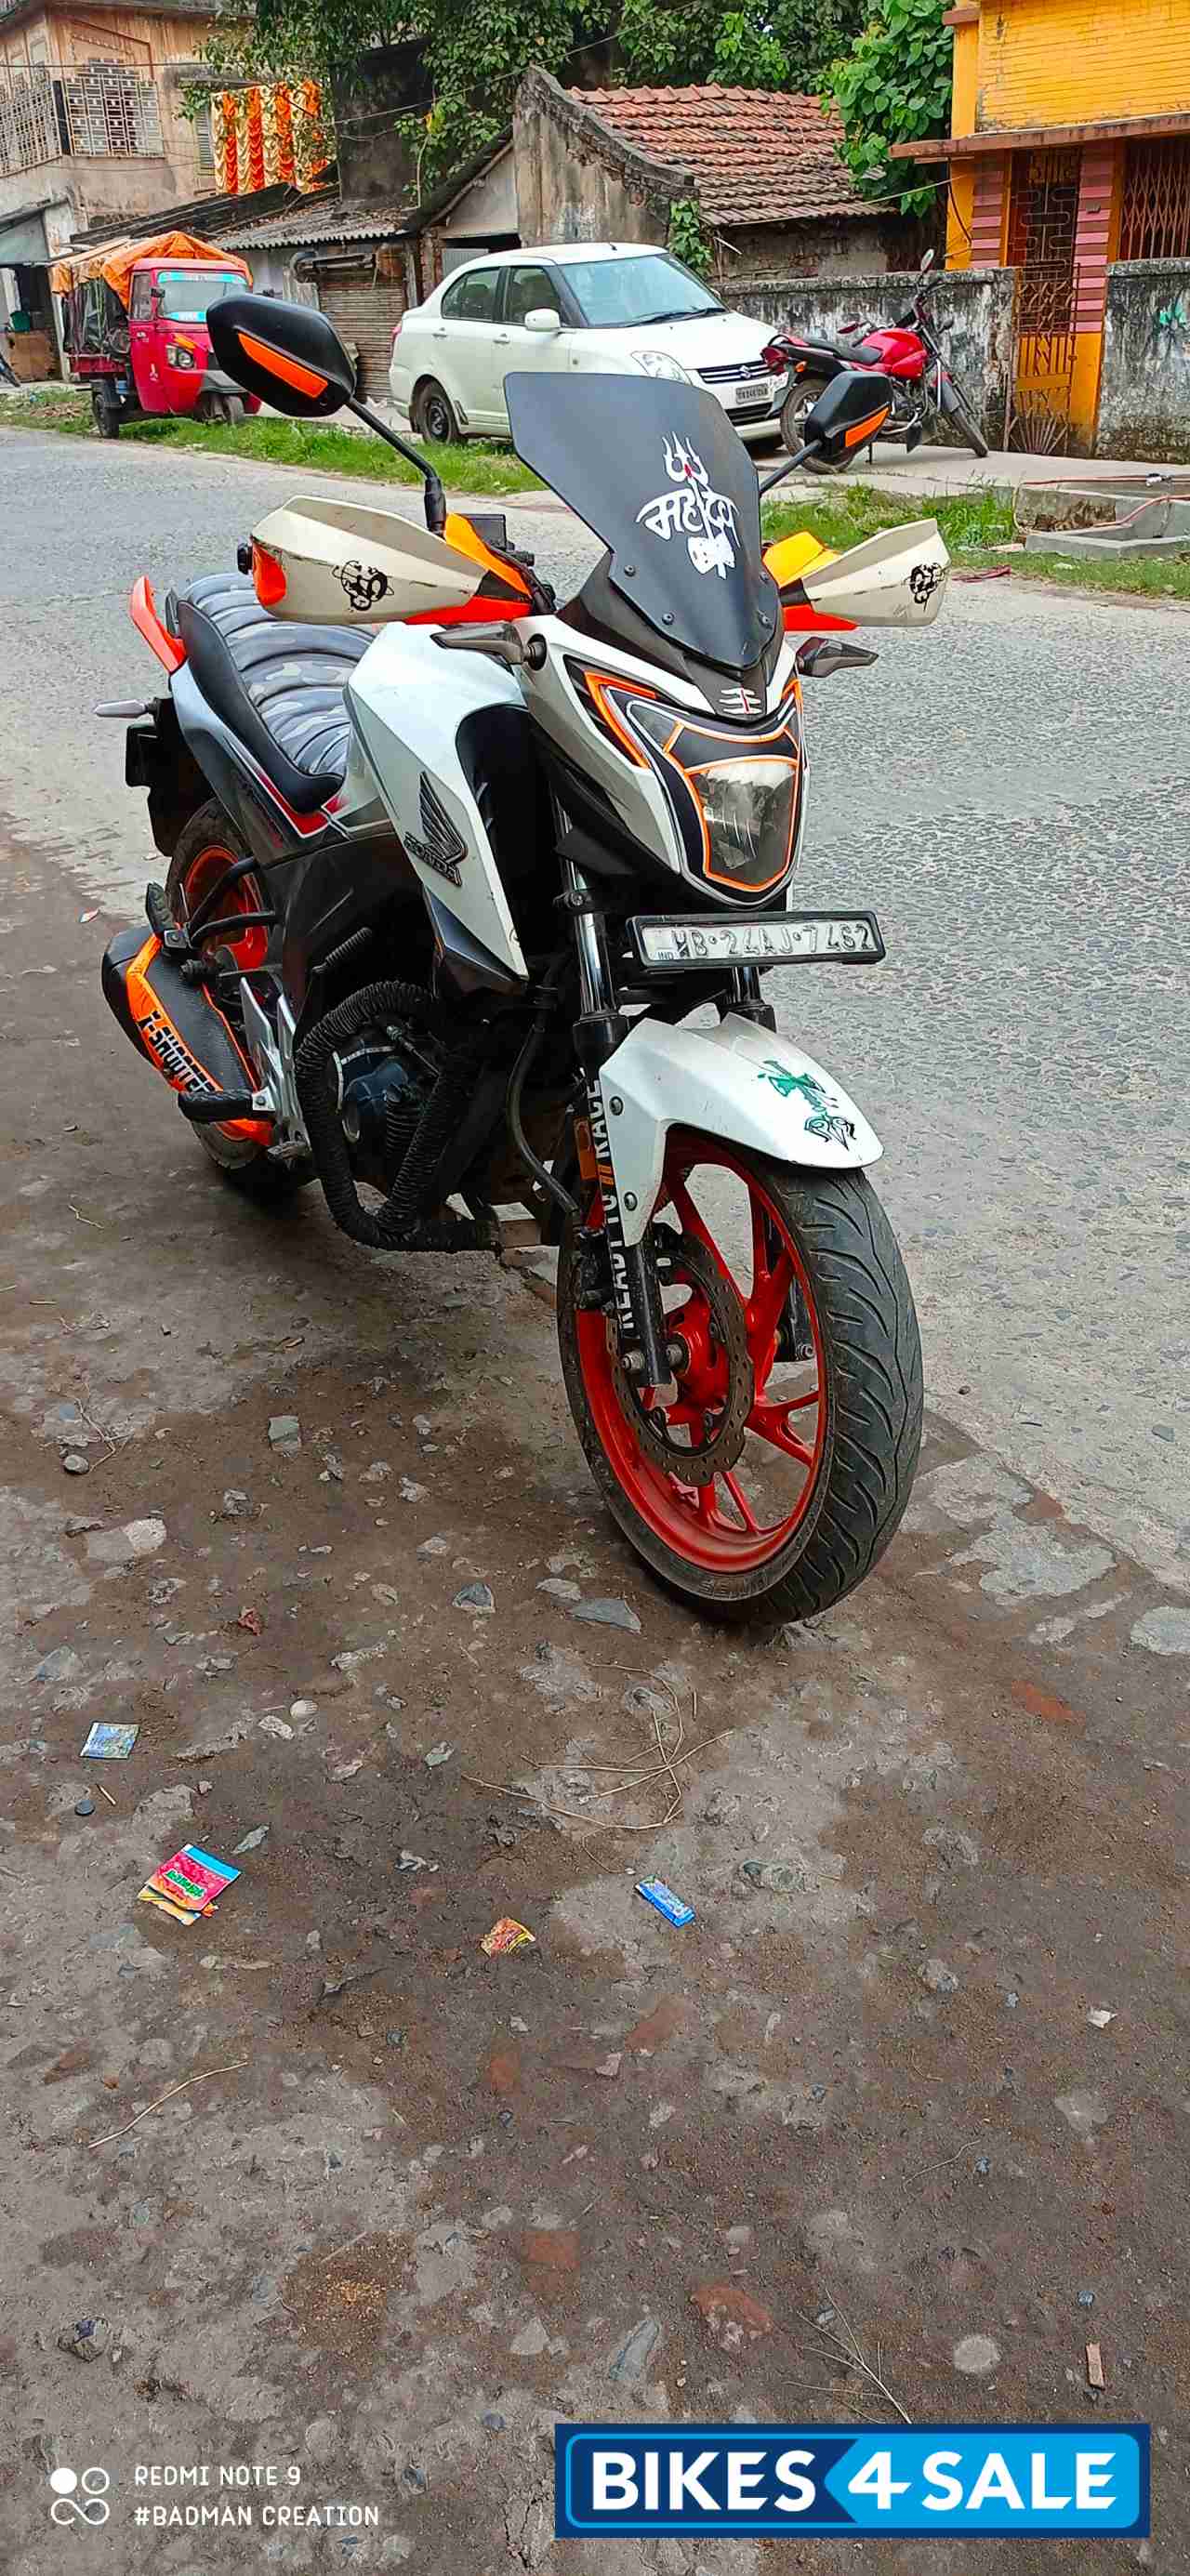 Used 16 Model Honda Cb Hornet 160r For Sale In Kolkata Id Bikes4sale